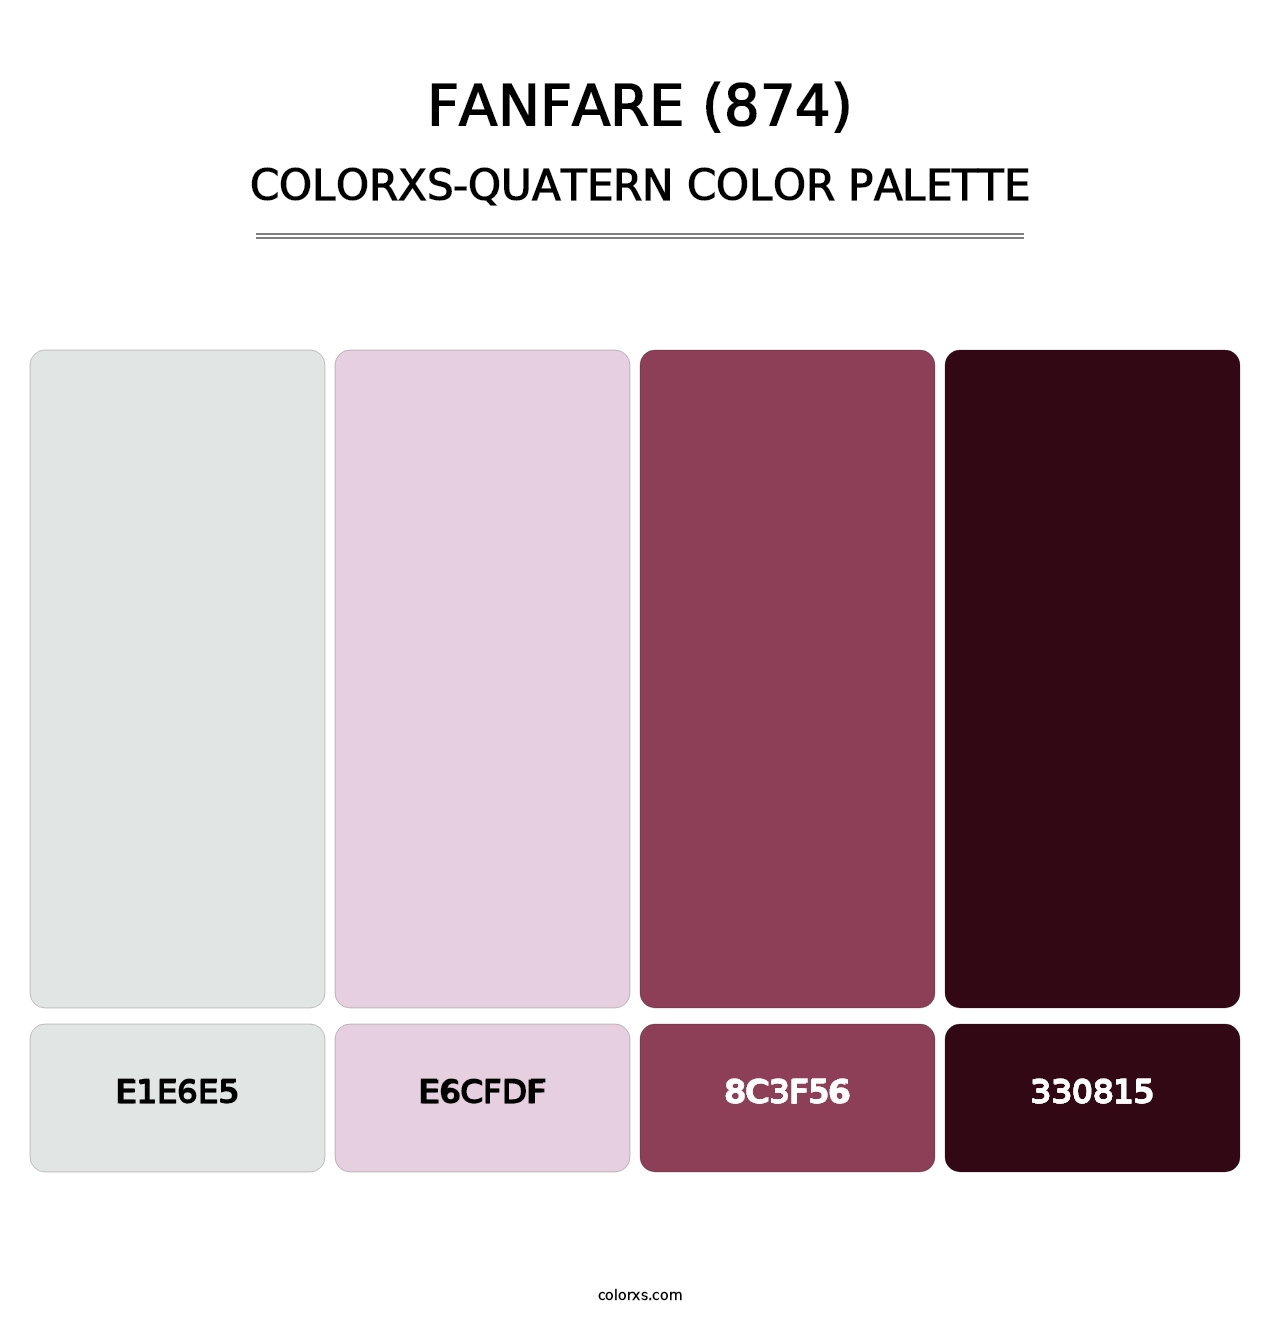 Fanfare (874) - Colorxs Quatern Palette